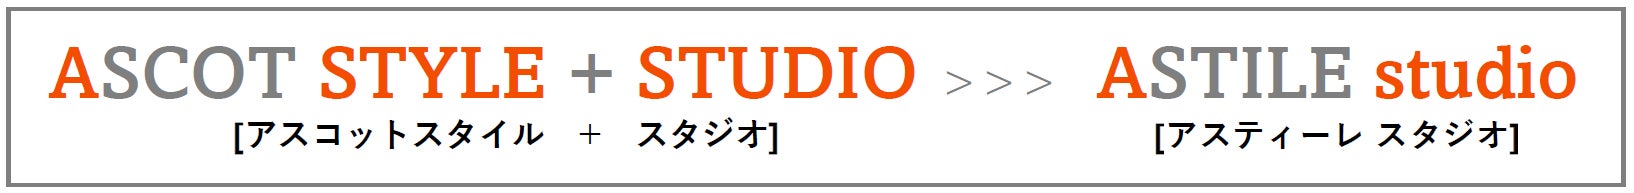 新・防音賃貸マンションシリーズ ASTILE studio [アスティーレ スタジオ] 経堂に誕生